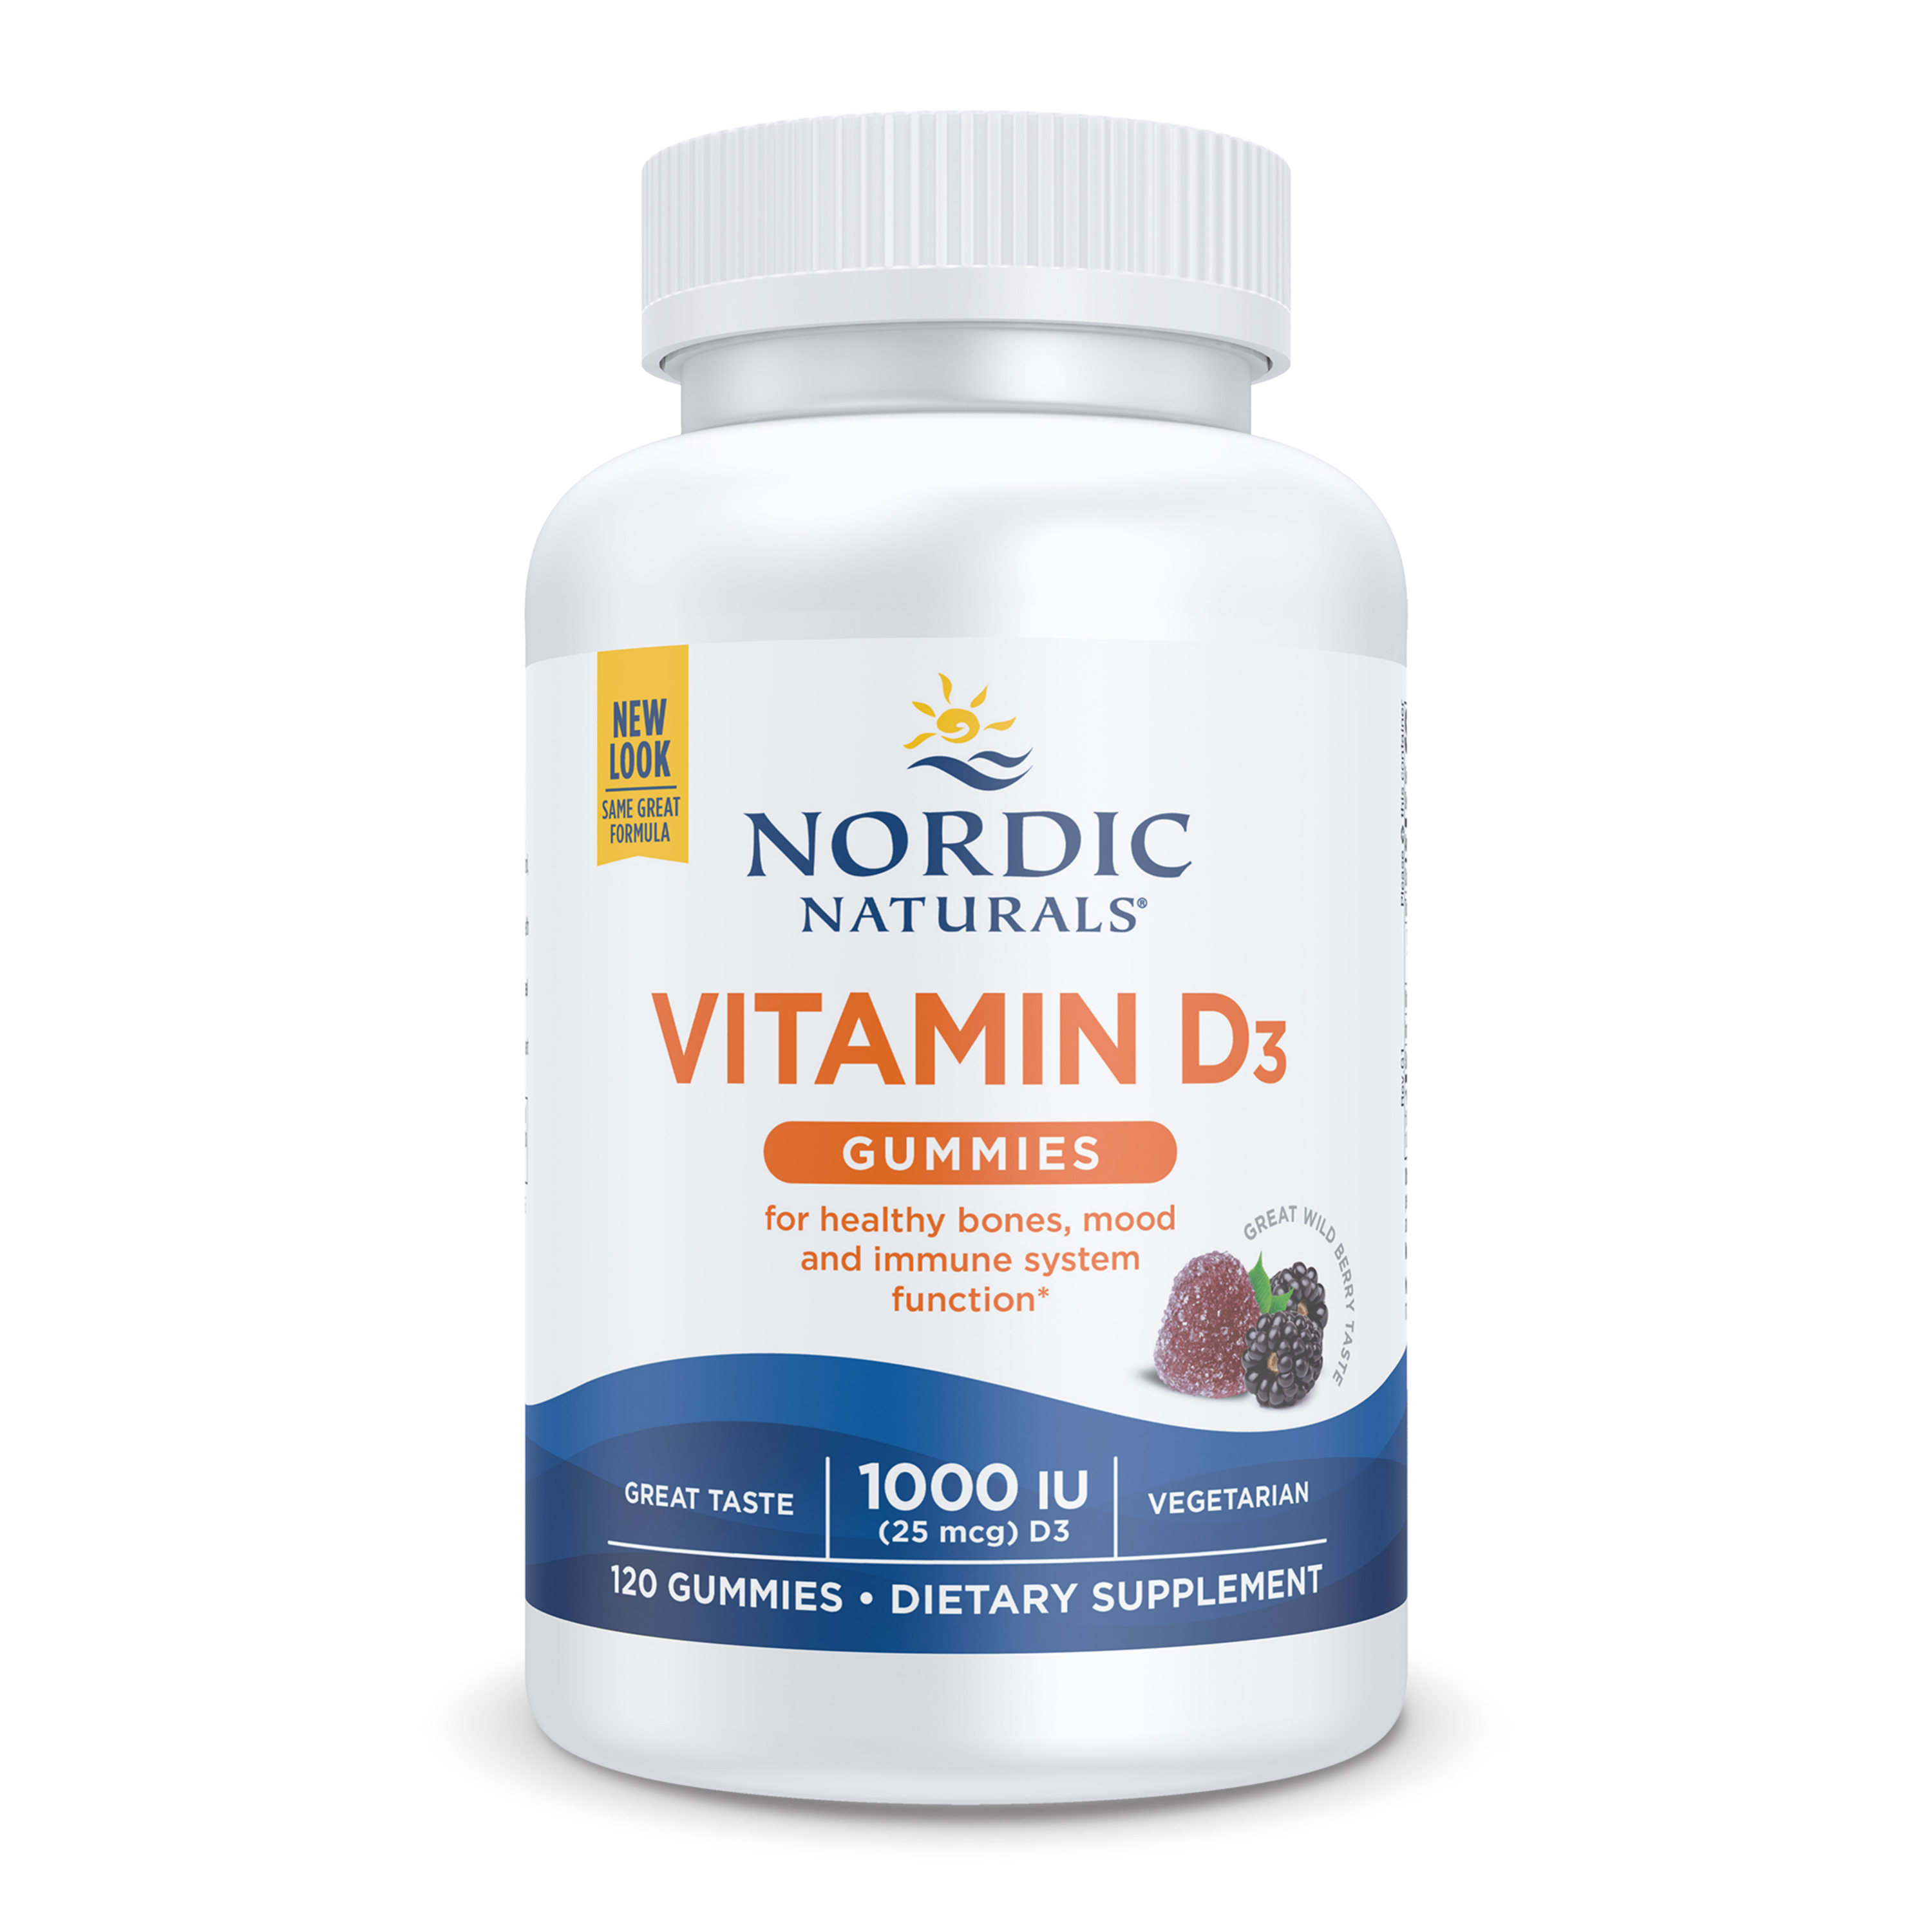 Nordic Naturals Vitamin D3 Gummies, 1000 IU, Great Taste, Non-GMO, 120 Ct - image 1 of 6